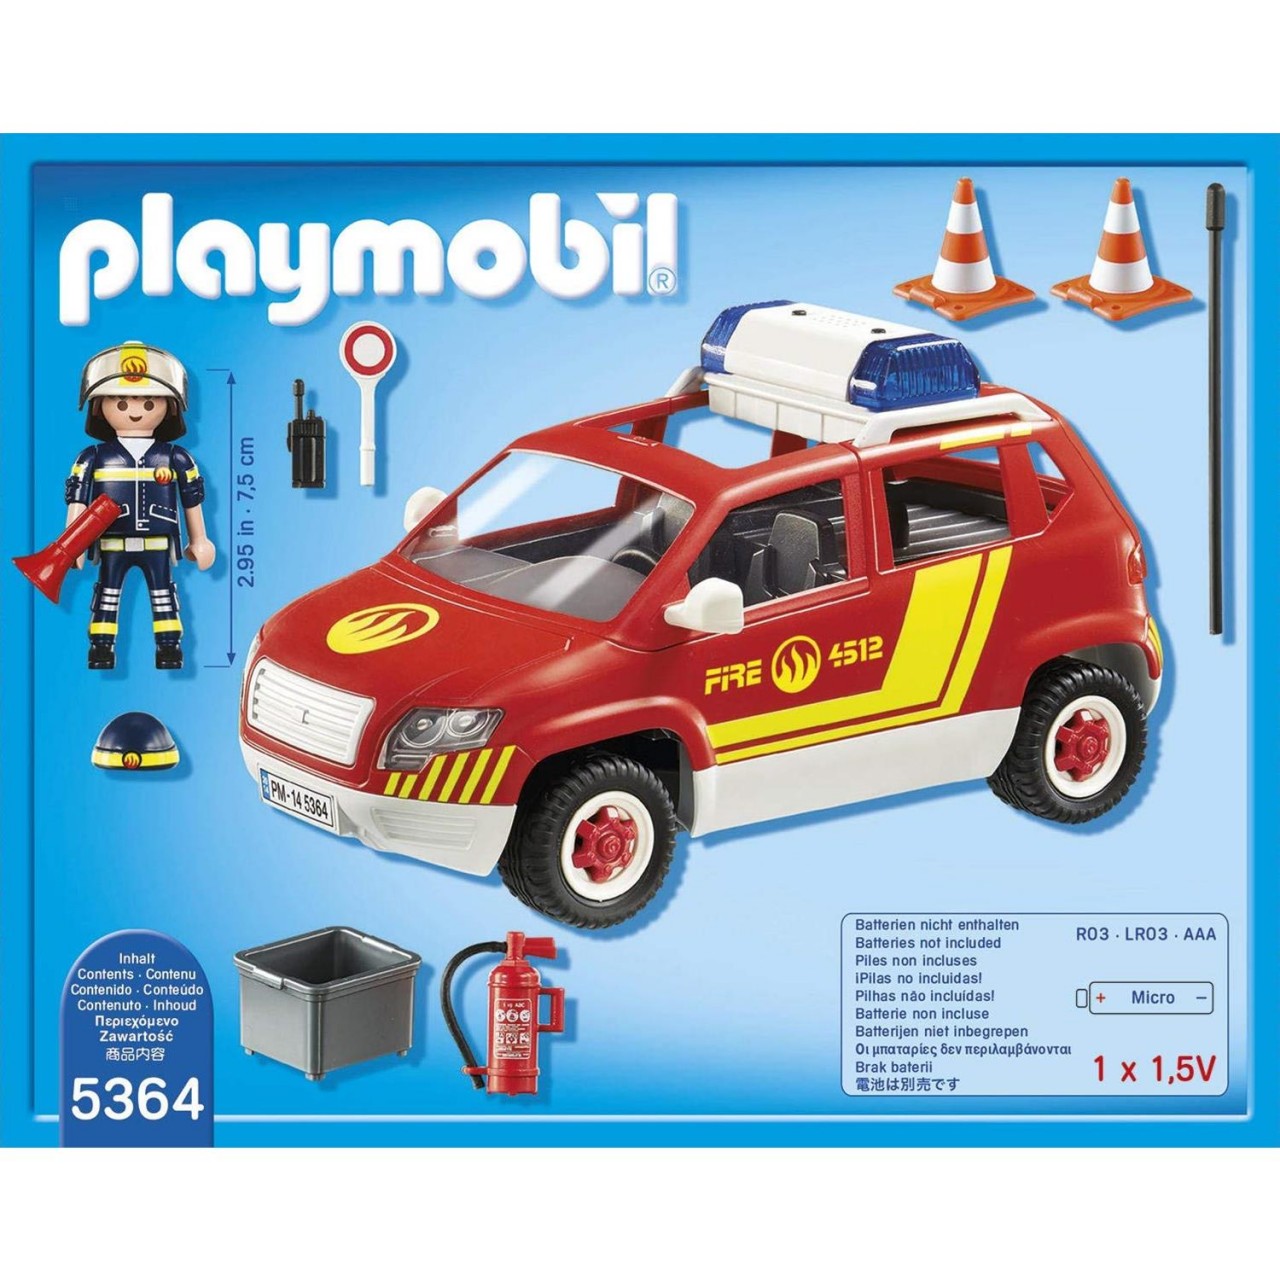 Playmobil 5364 Brandmeisterfahrzeug mit Licht und Sound